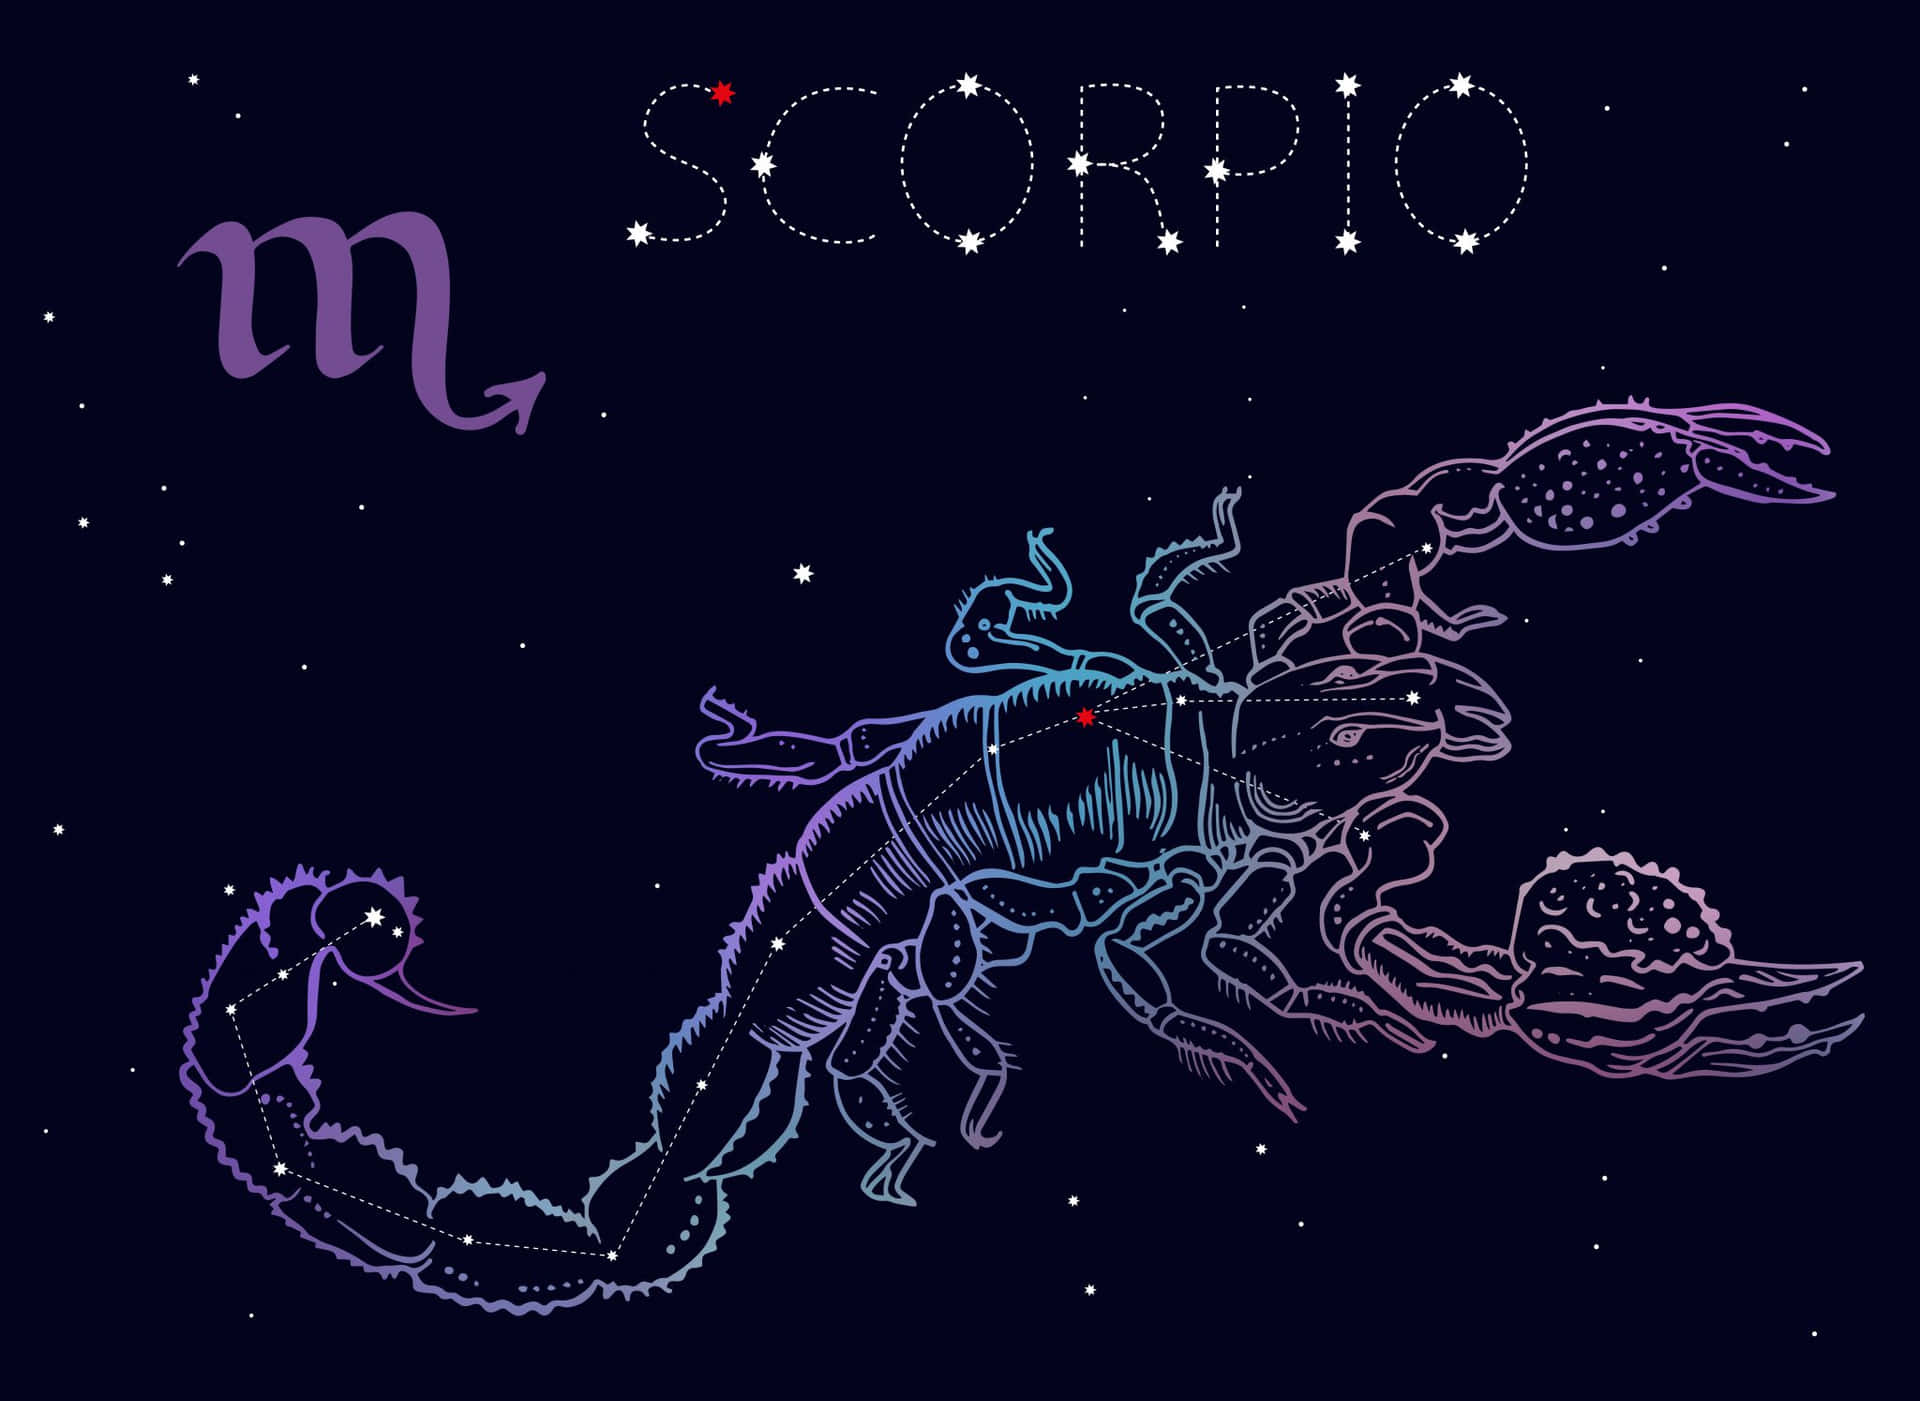 Lacostellazione Dello Scorpione Illuminata Nel Cielo Notturno